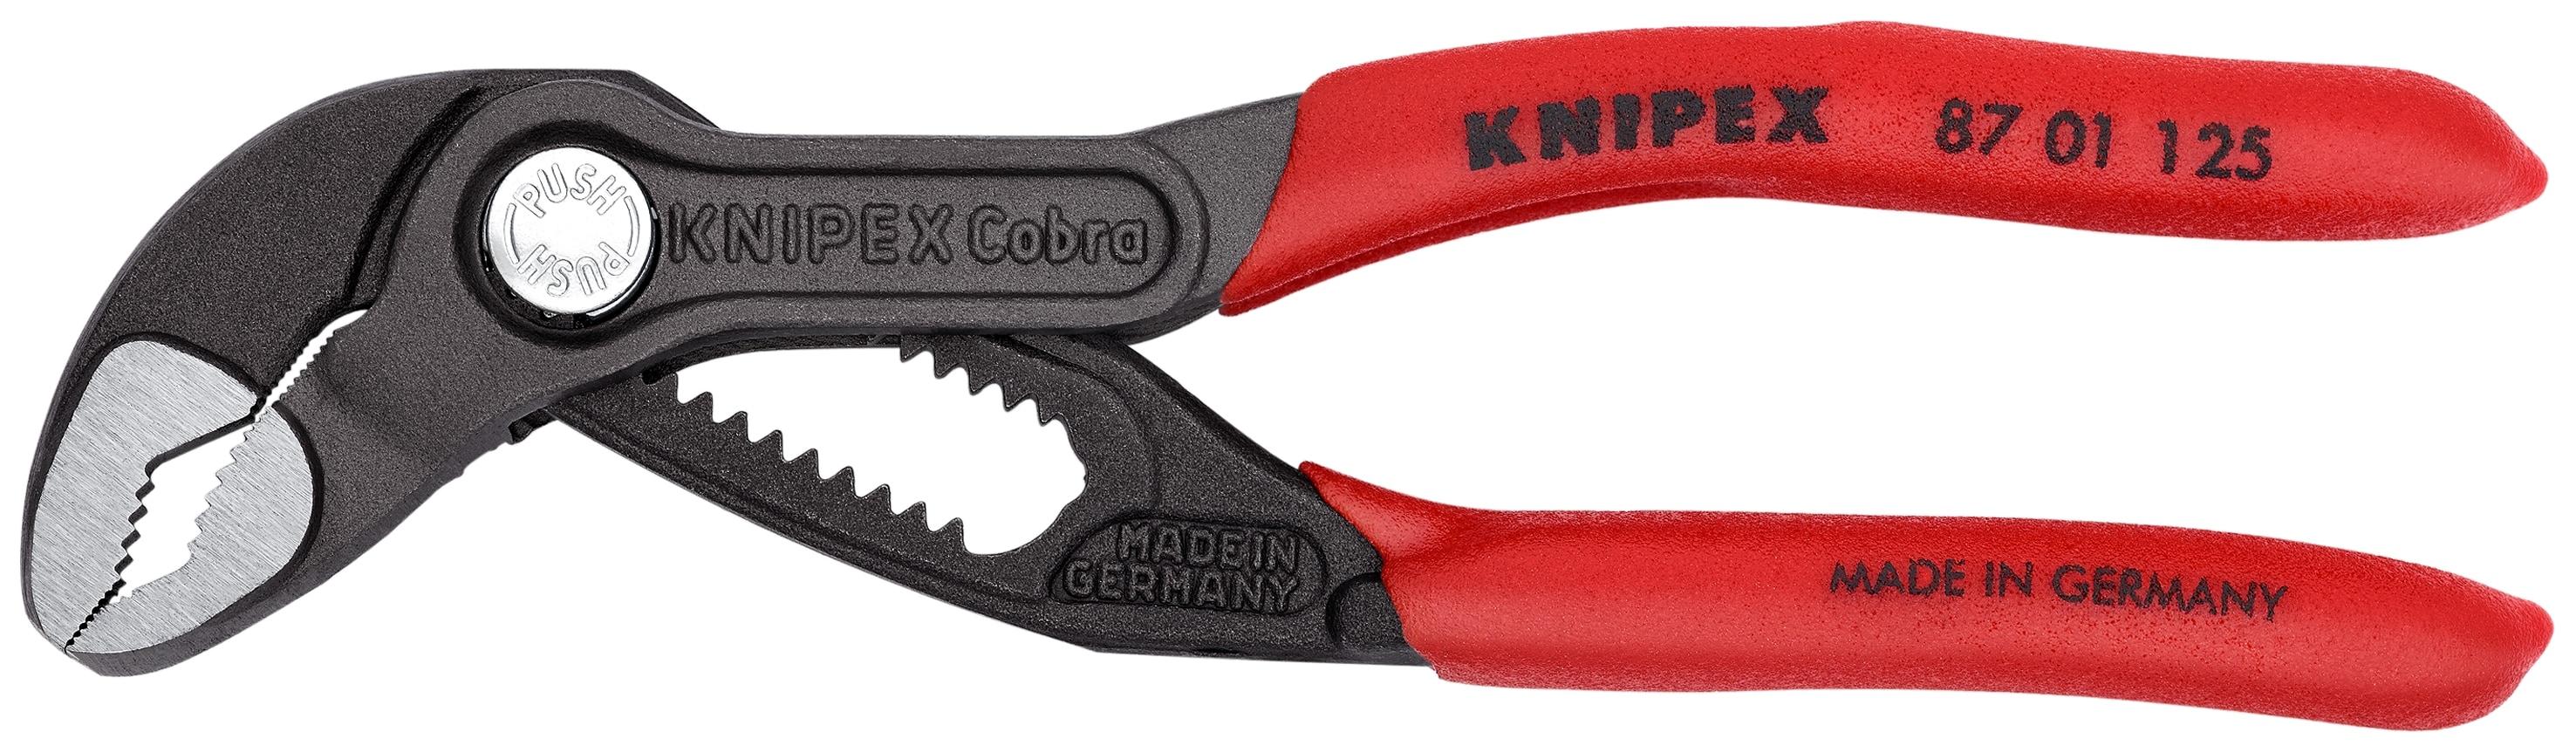 Knipex 00 19 55 S5 Knipex Cobra Pliers